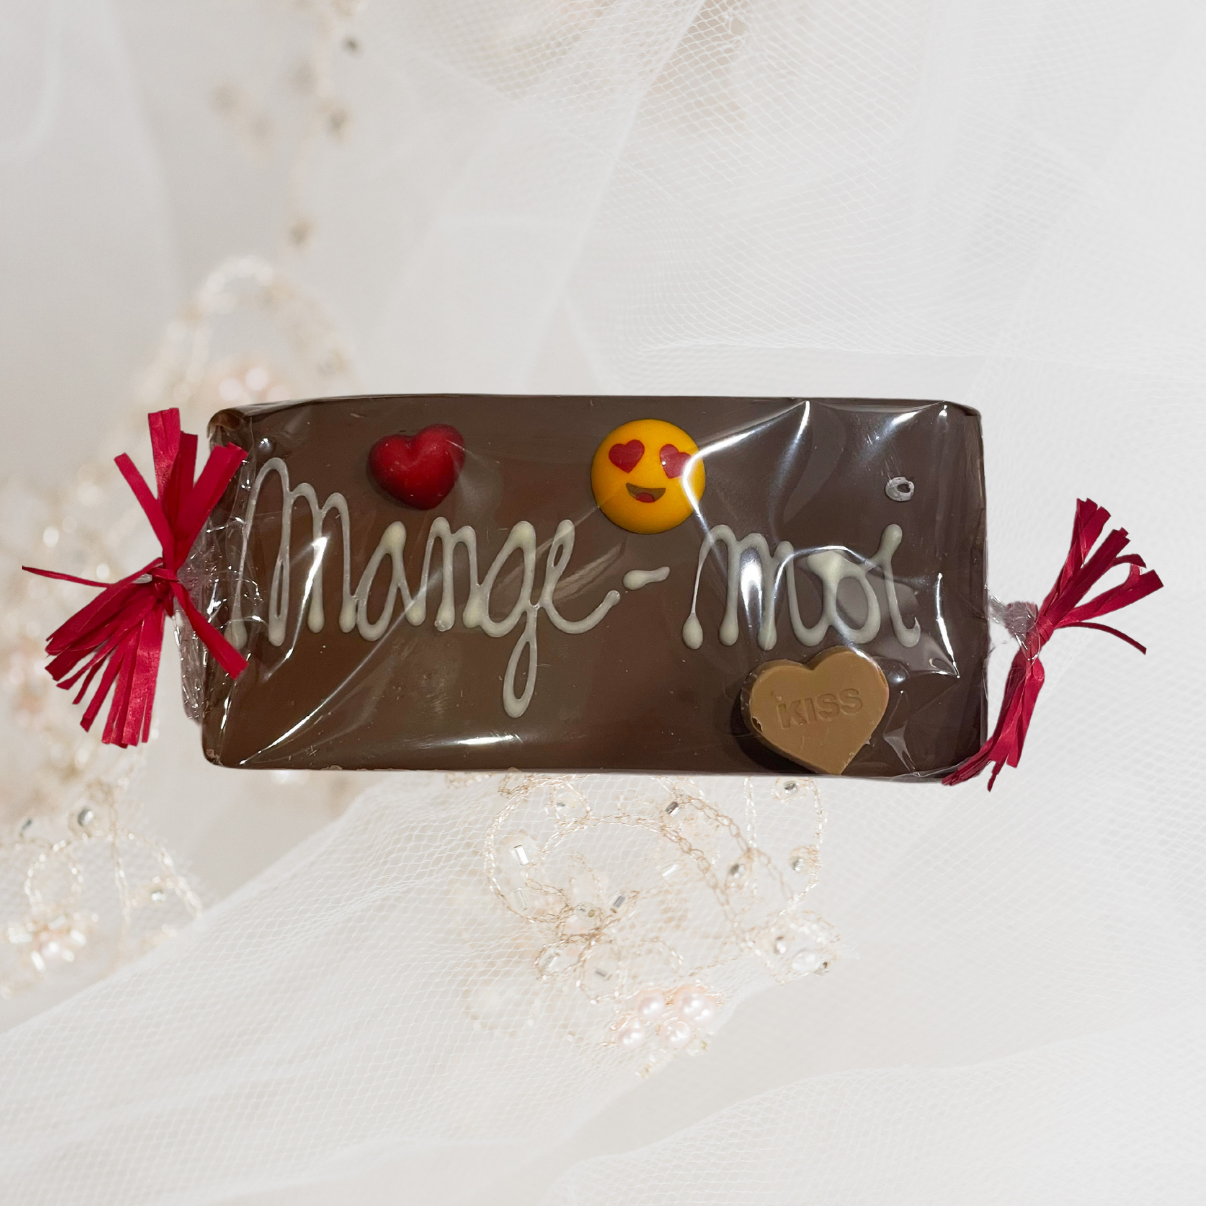 Plaque chocolat spéciale "Amour"